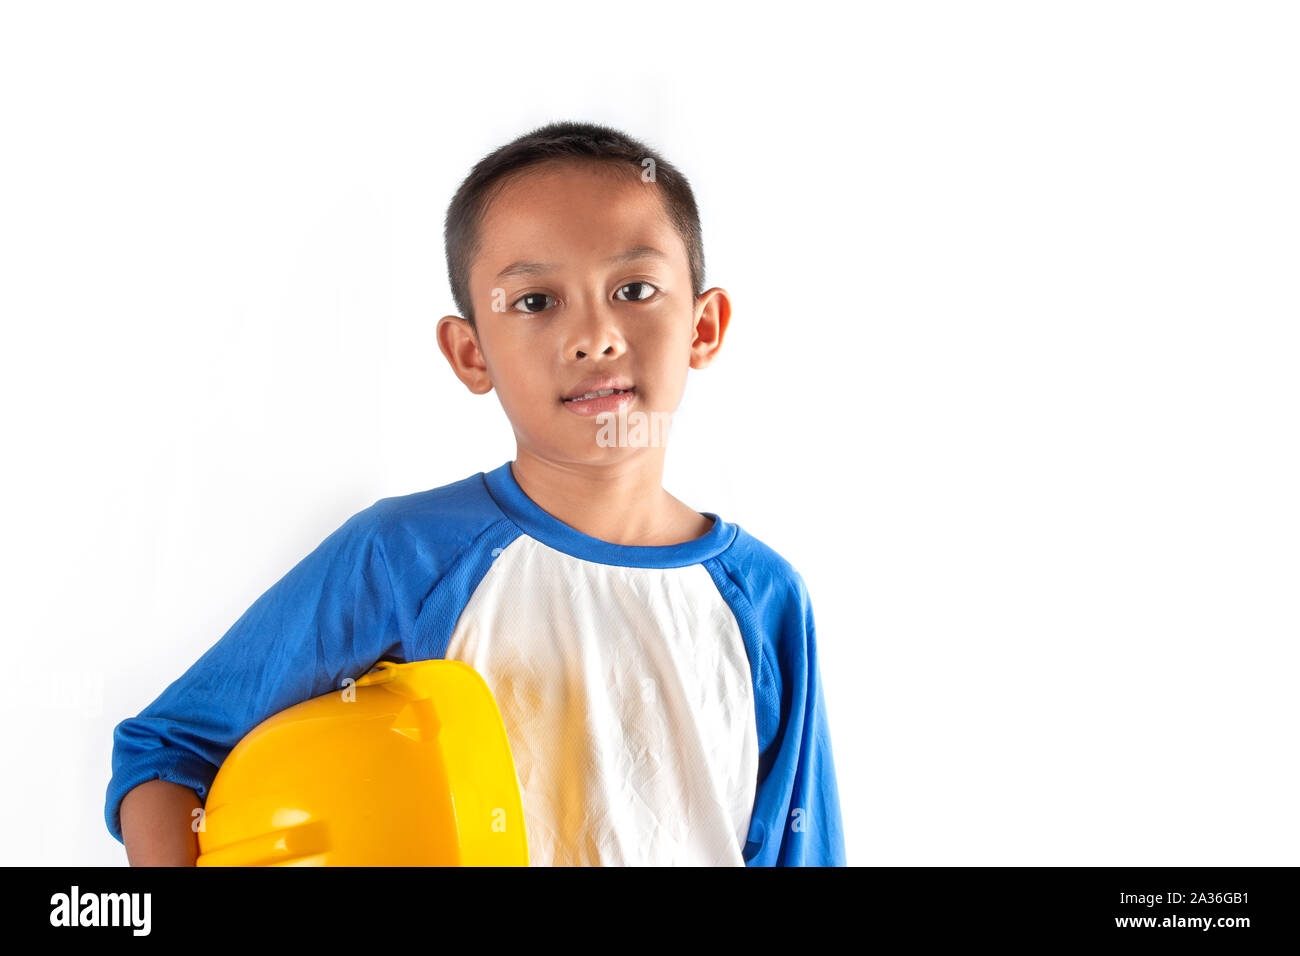 Le petit garçon dans un rêve veut être un architecte ou un ingénieur à l'avenir. Banque D'Images